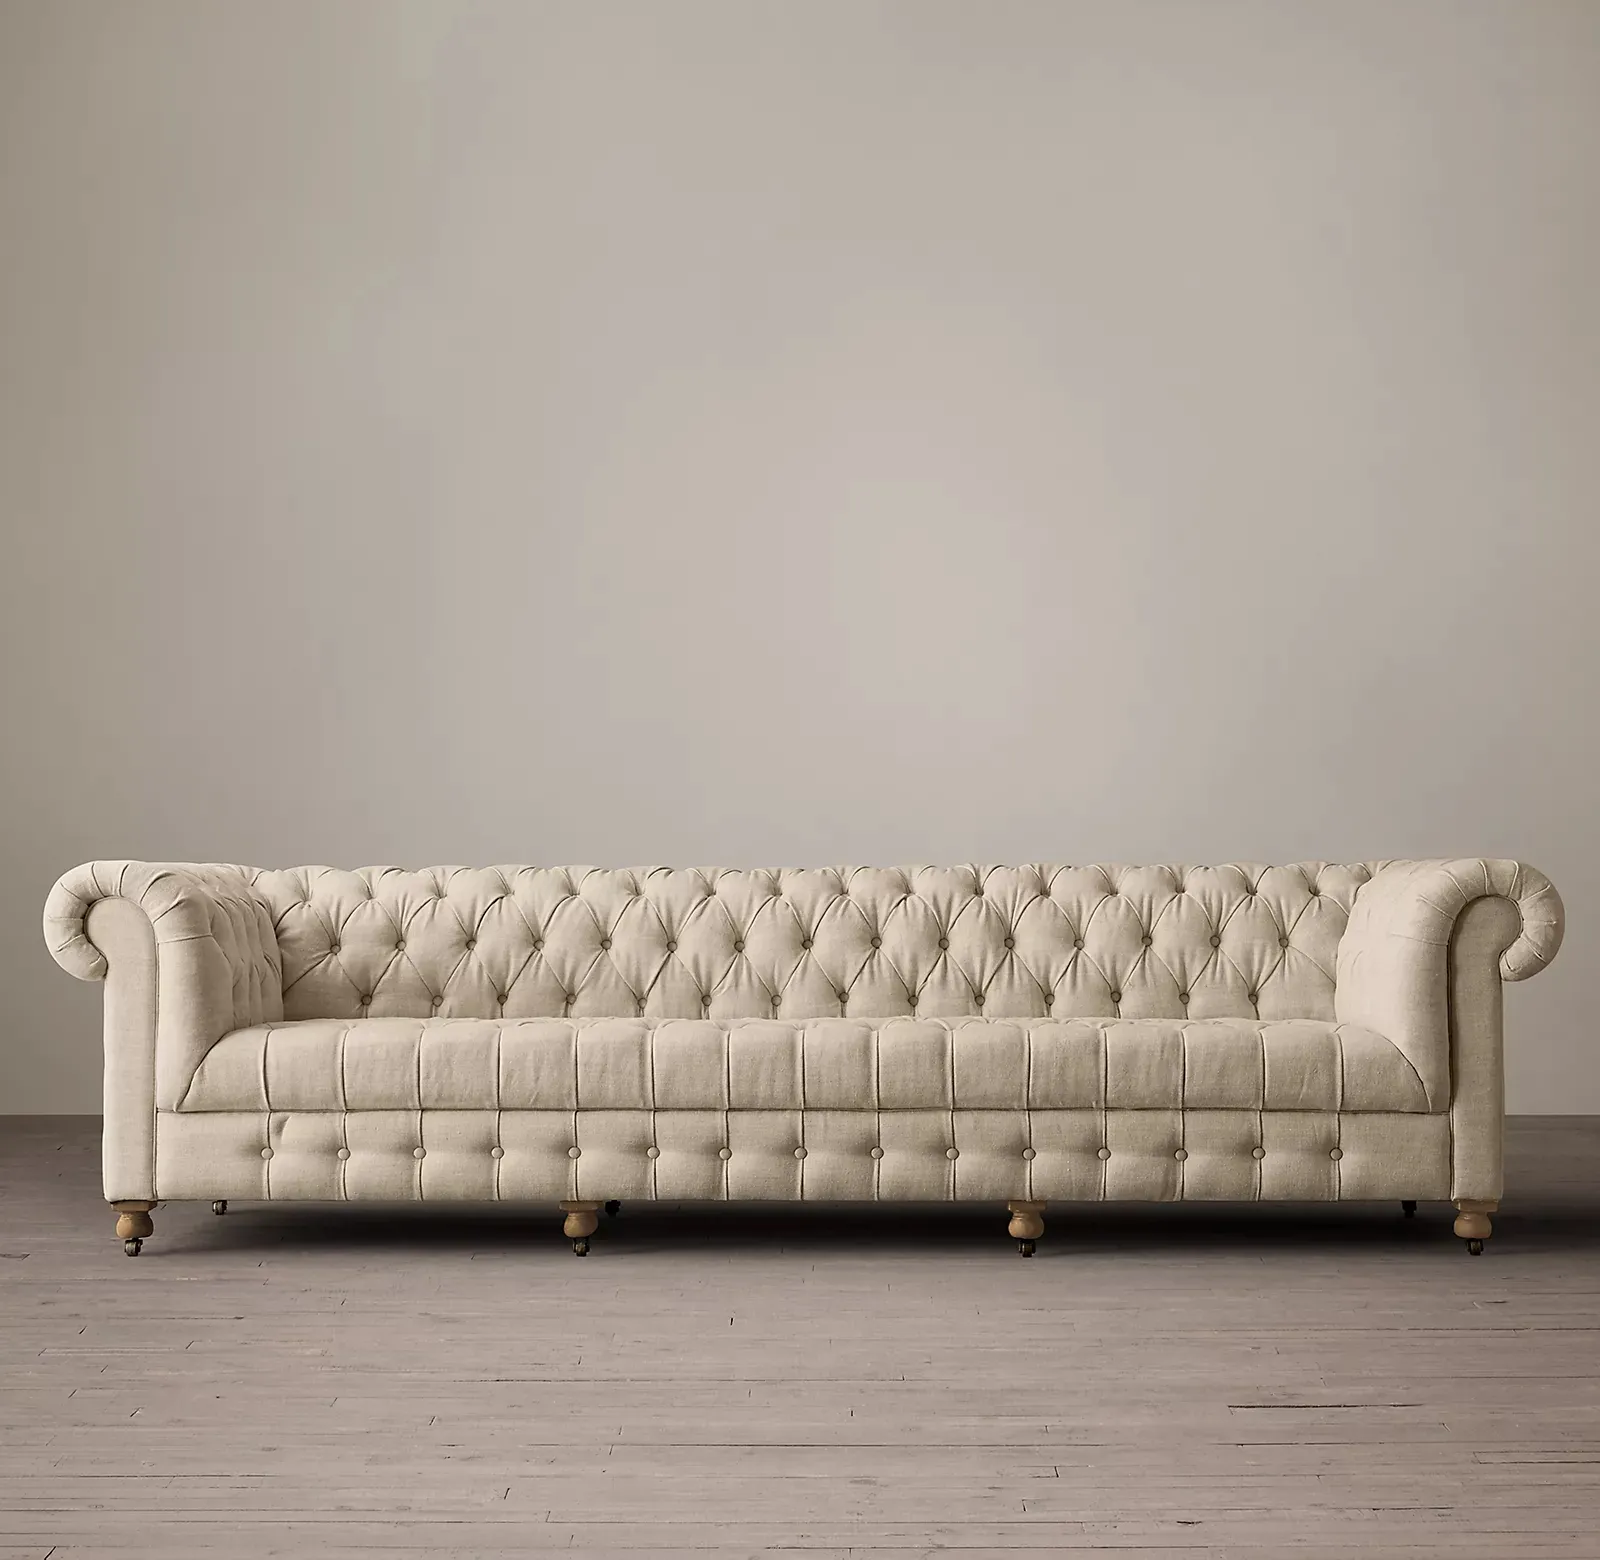 Furnitur dalam ruangan ruang tamu klasik Chesterfield style button-tufting kain sofa beludru